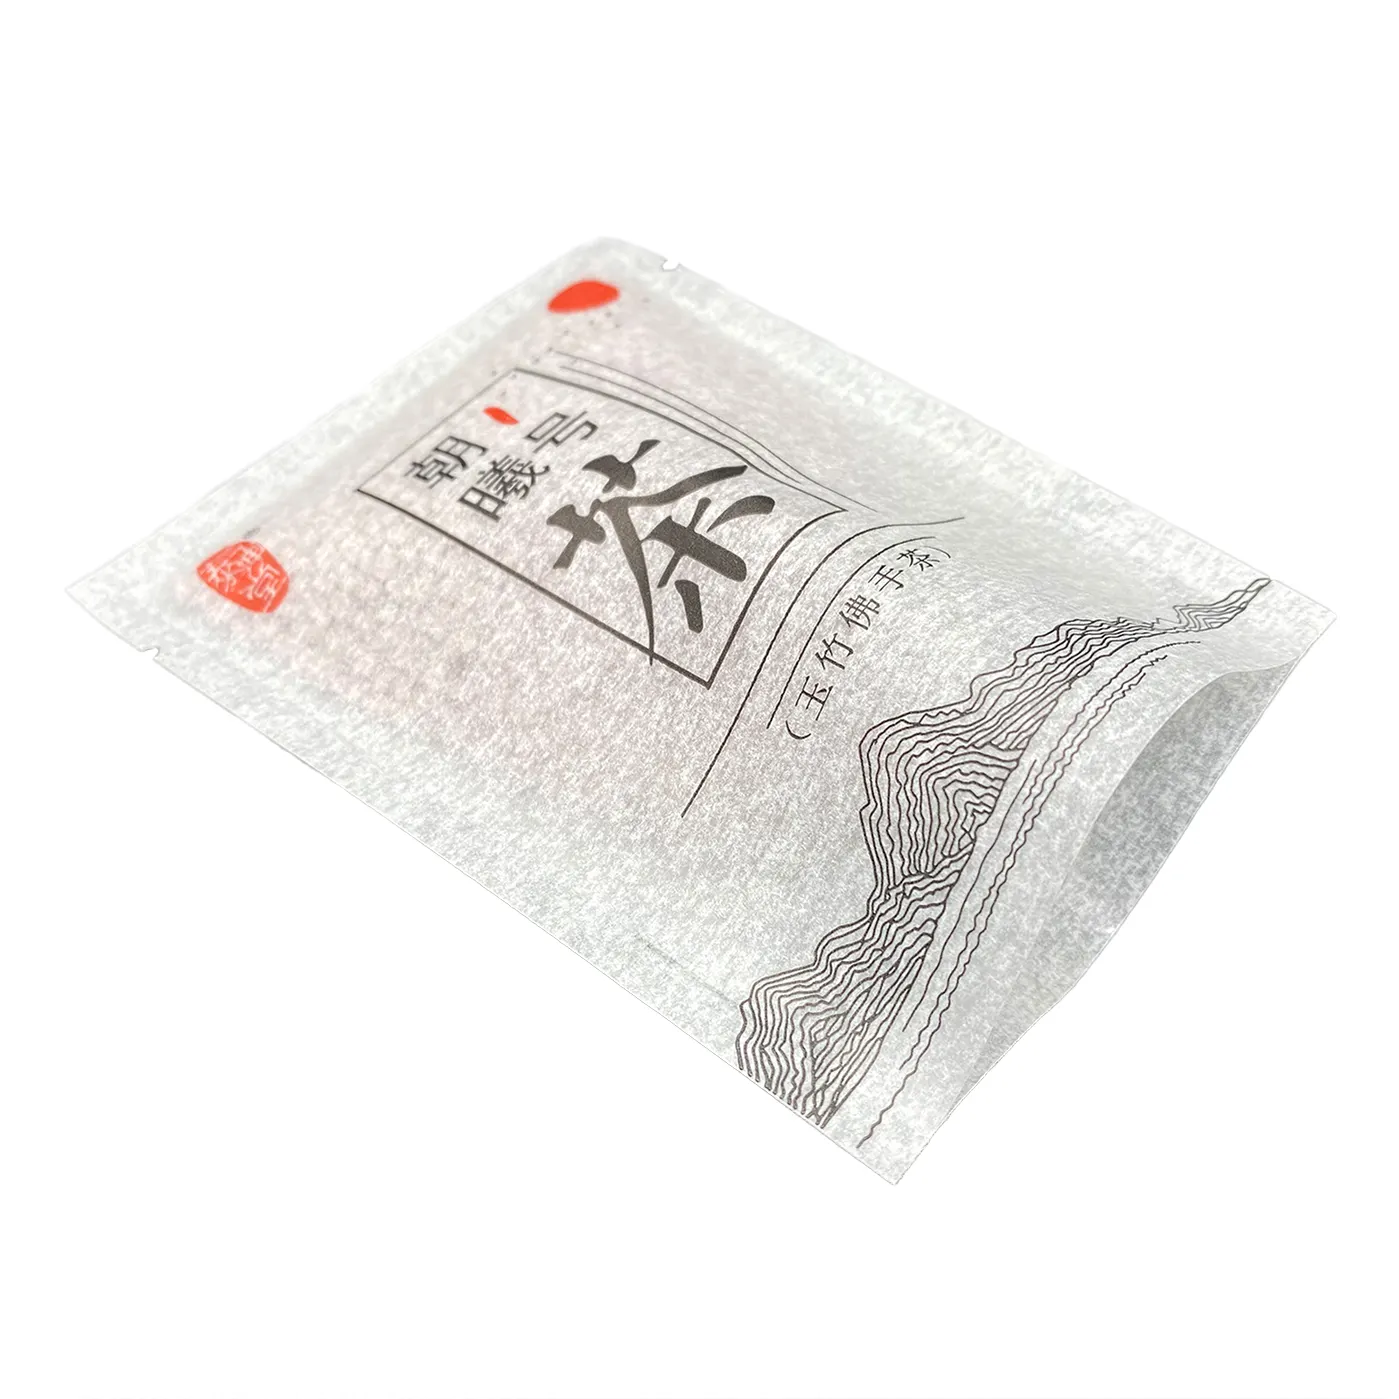 OEM 사용자 정의 인쇄 작은 차 향 주머니 적층 티슈 종이 패킷 샘플 포장 가방